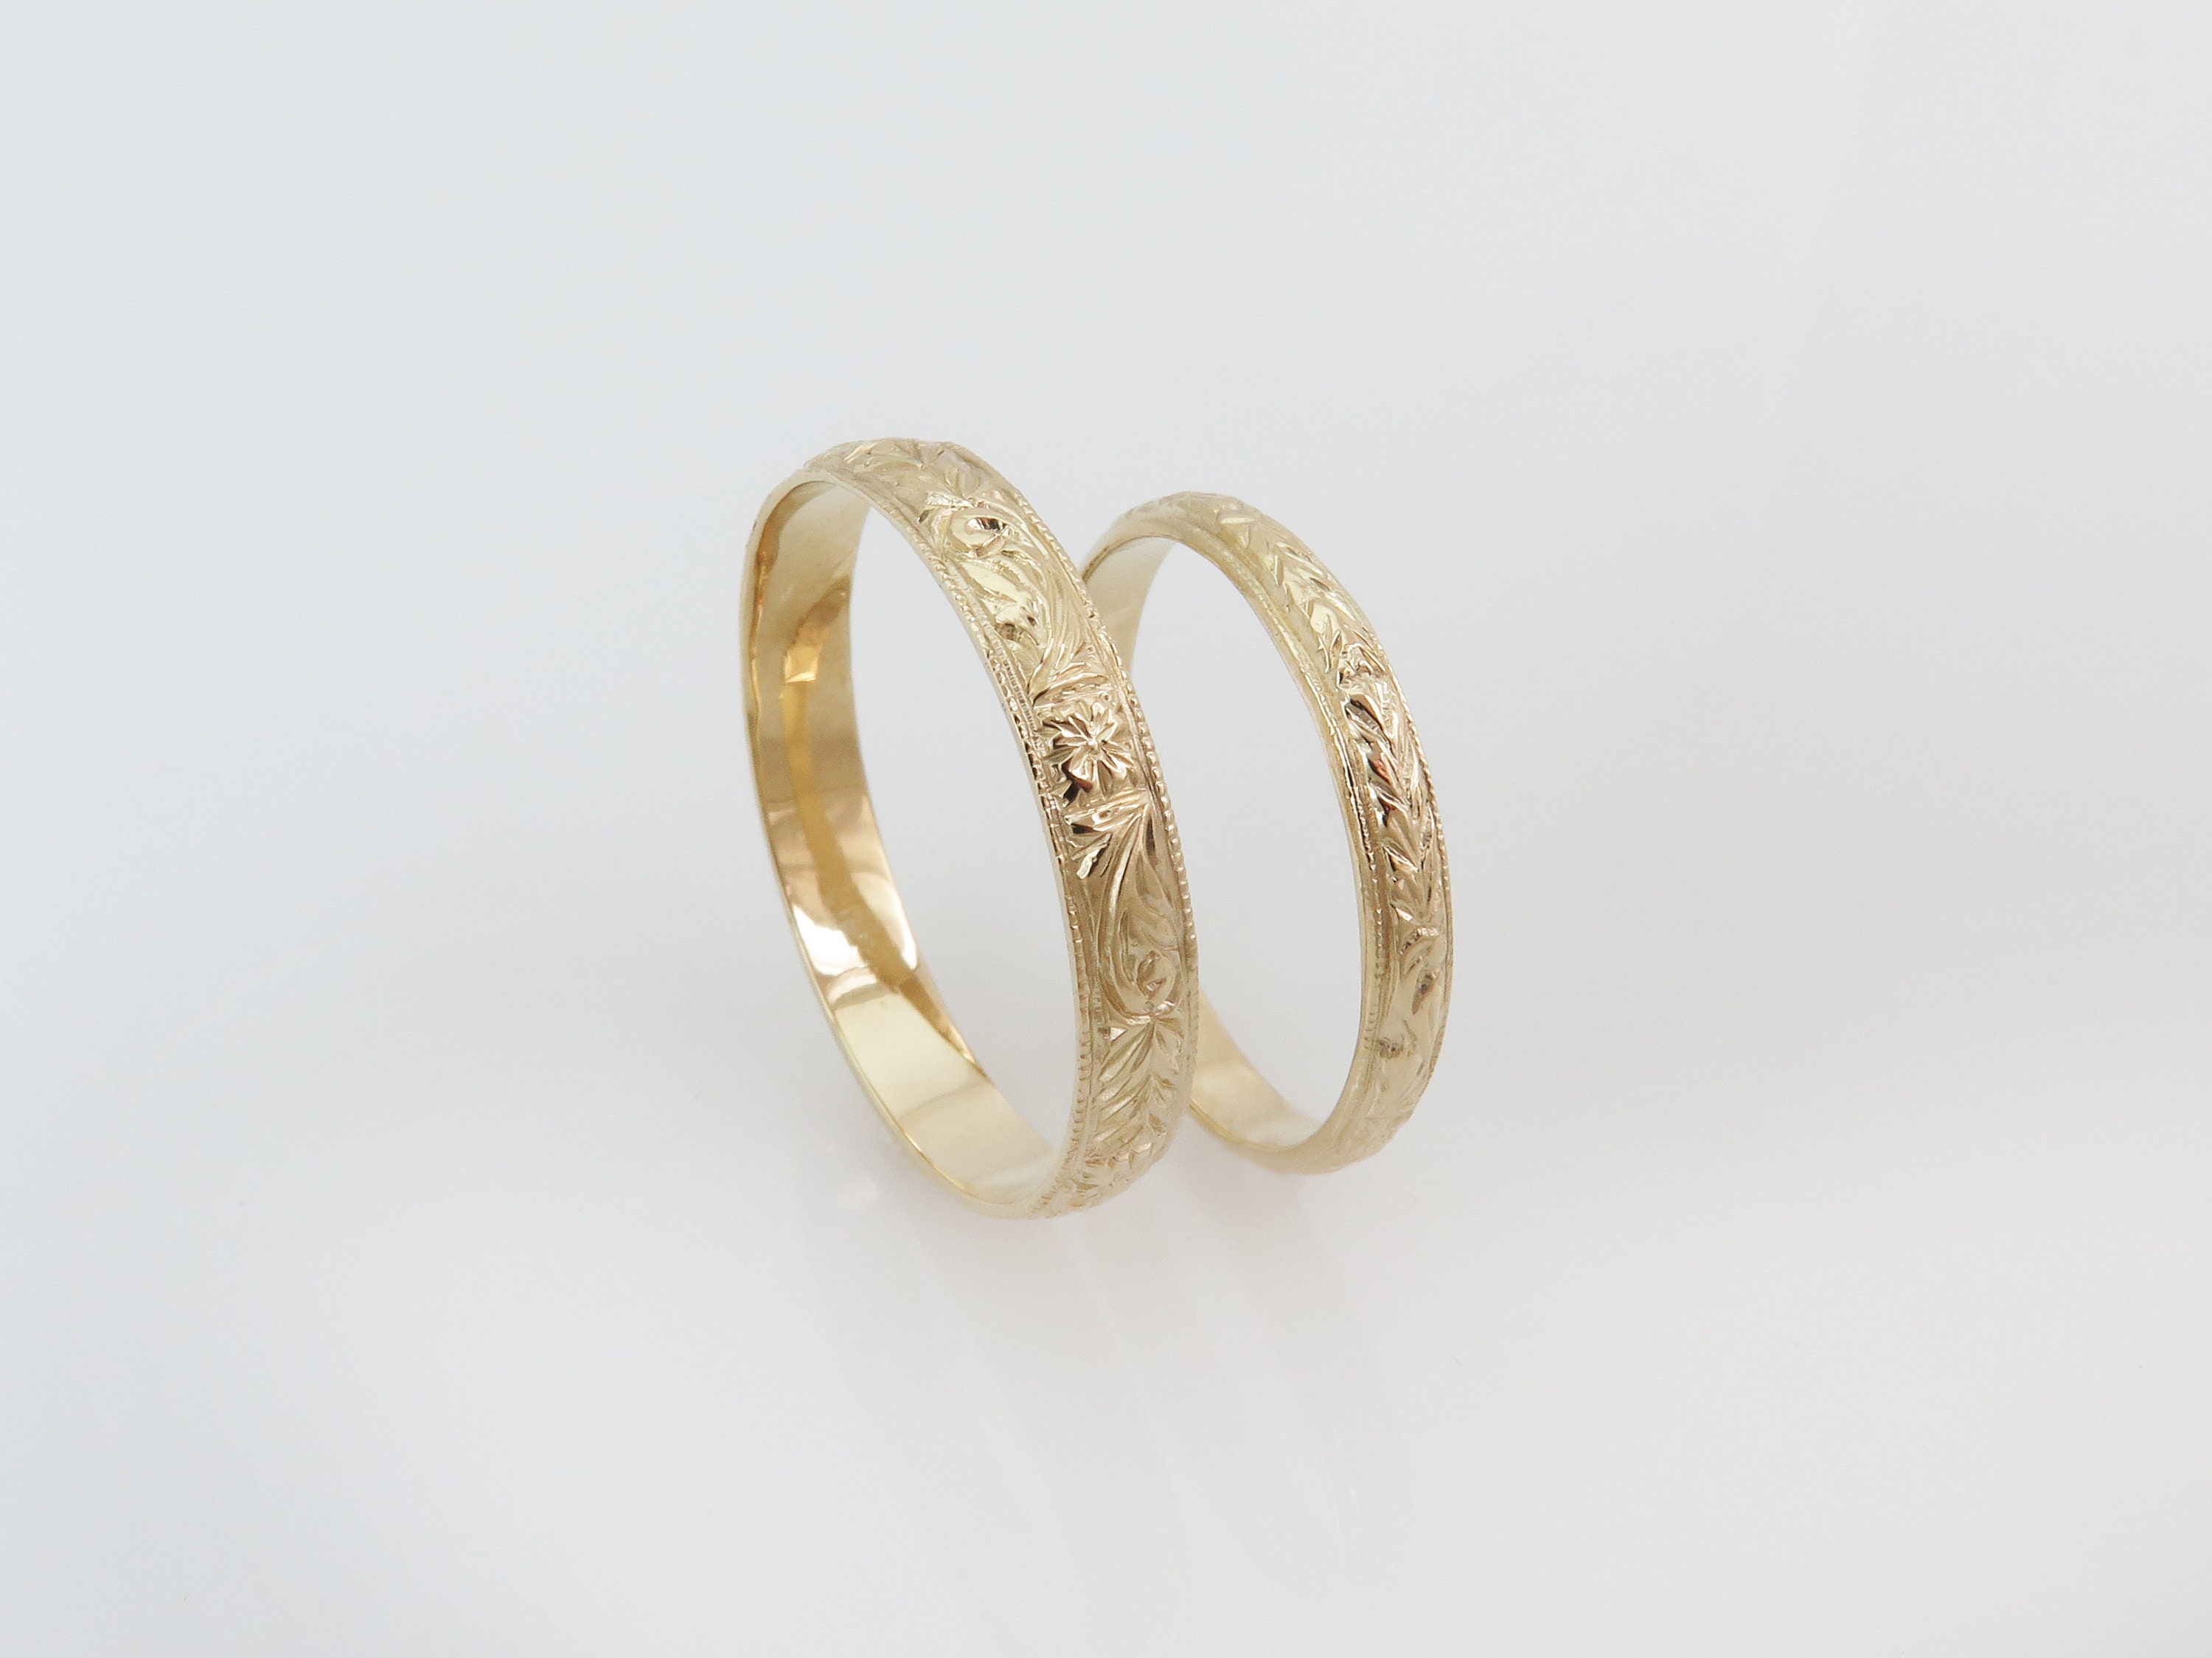 Unisex Wedding Band Couples Rings 14k Gold Wedding Ring Set - Etsy